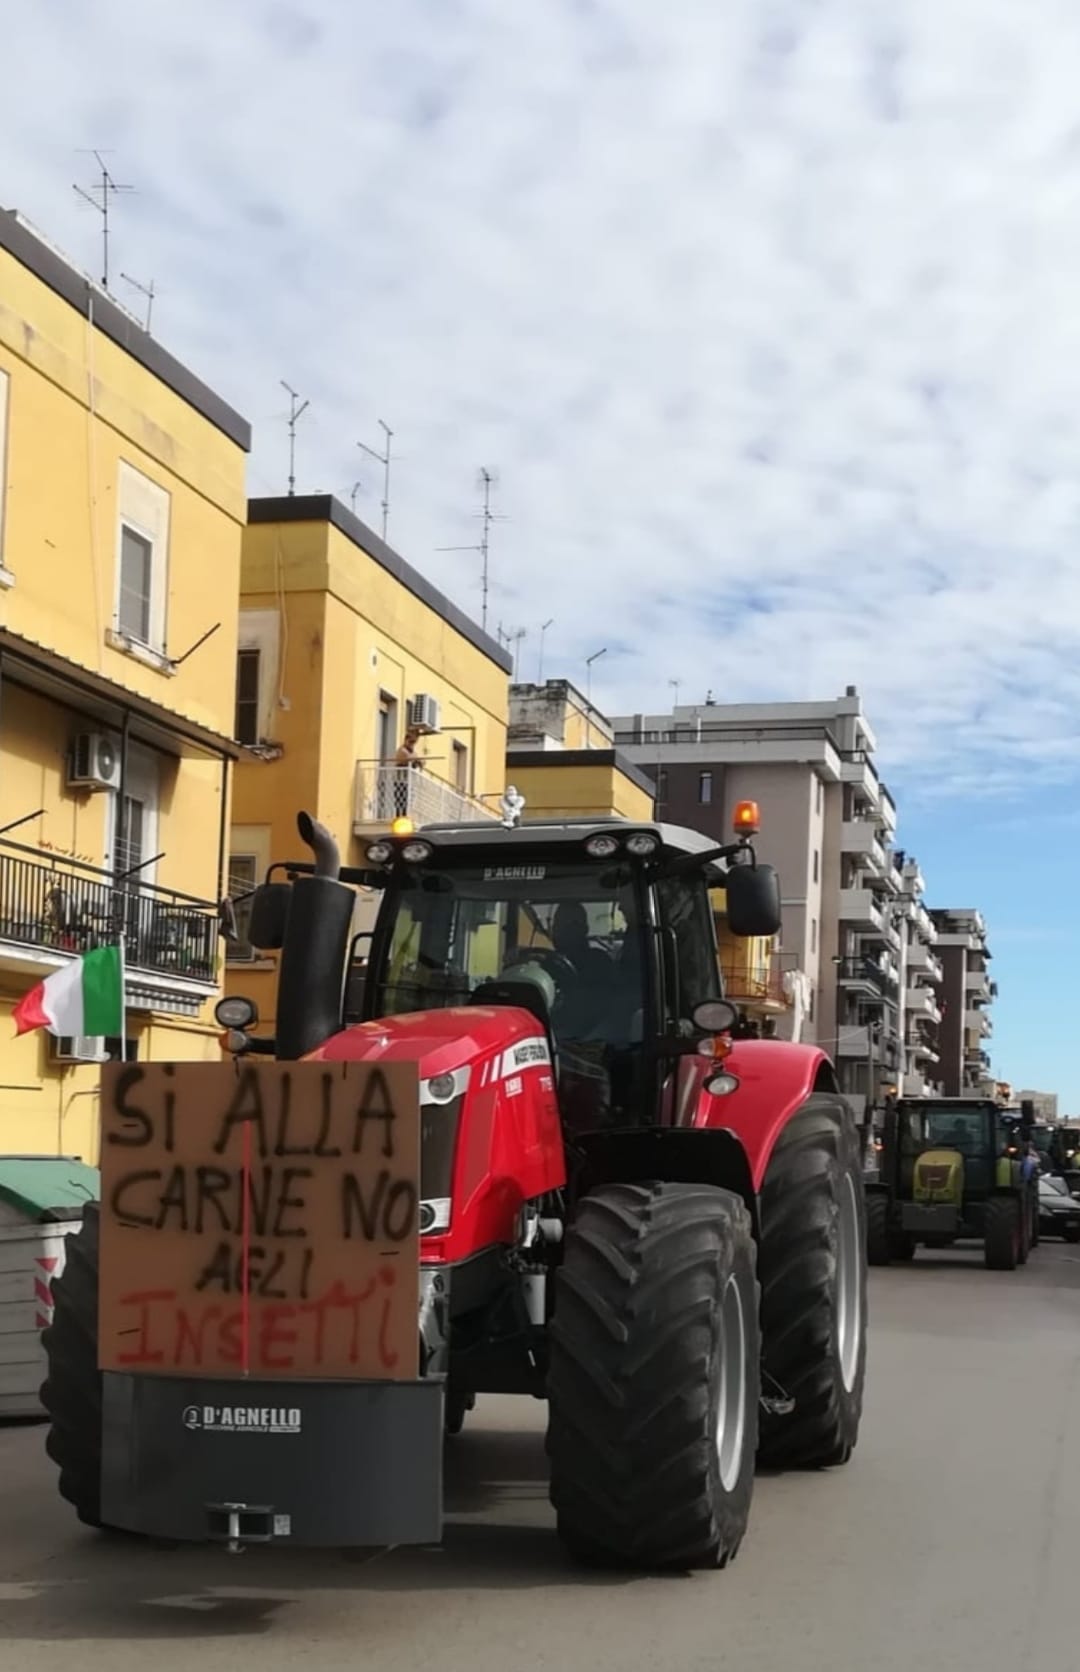 protesta agricoltori: cartello sì alla carne no agli insetti